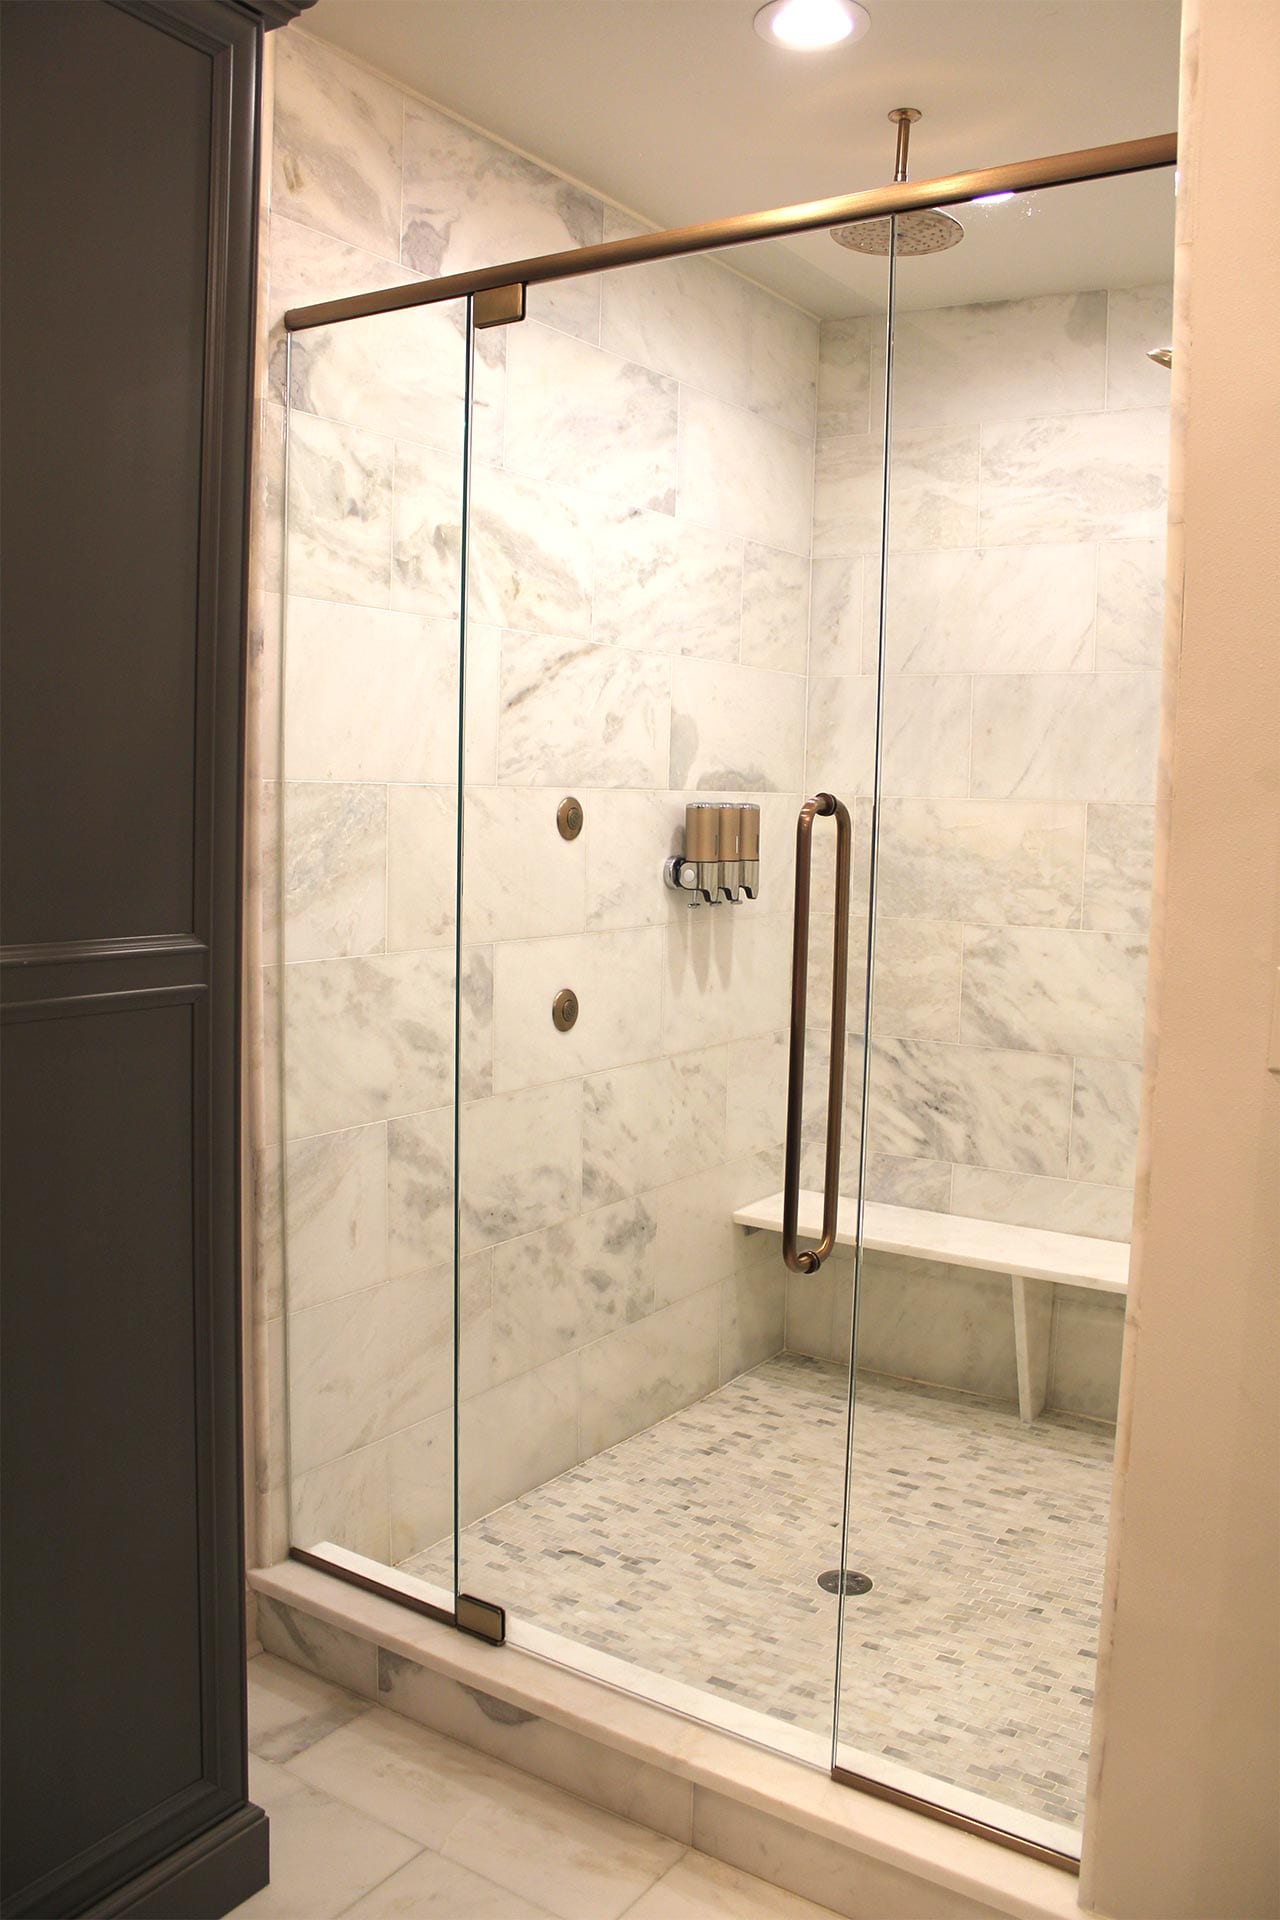 Options & Fixtures, Shower Doors Portfolio